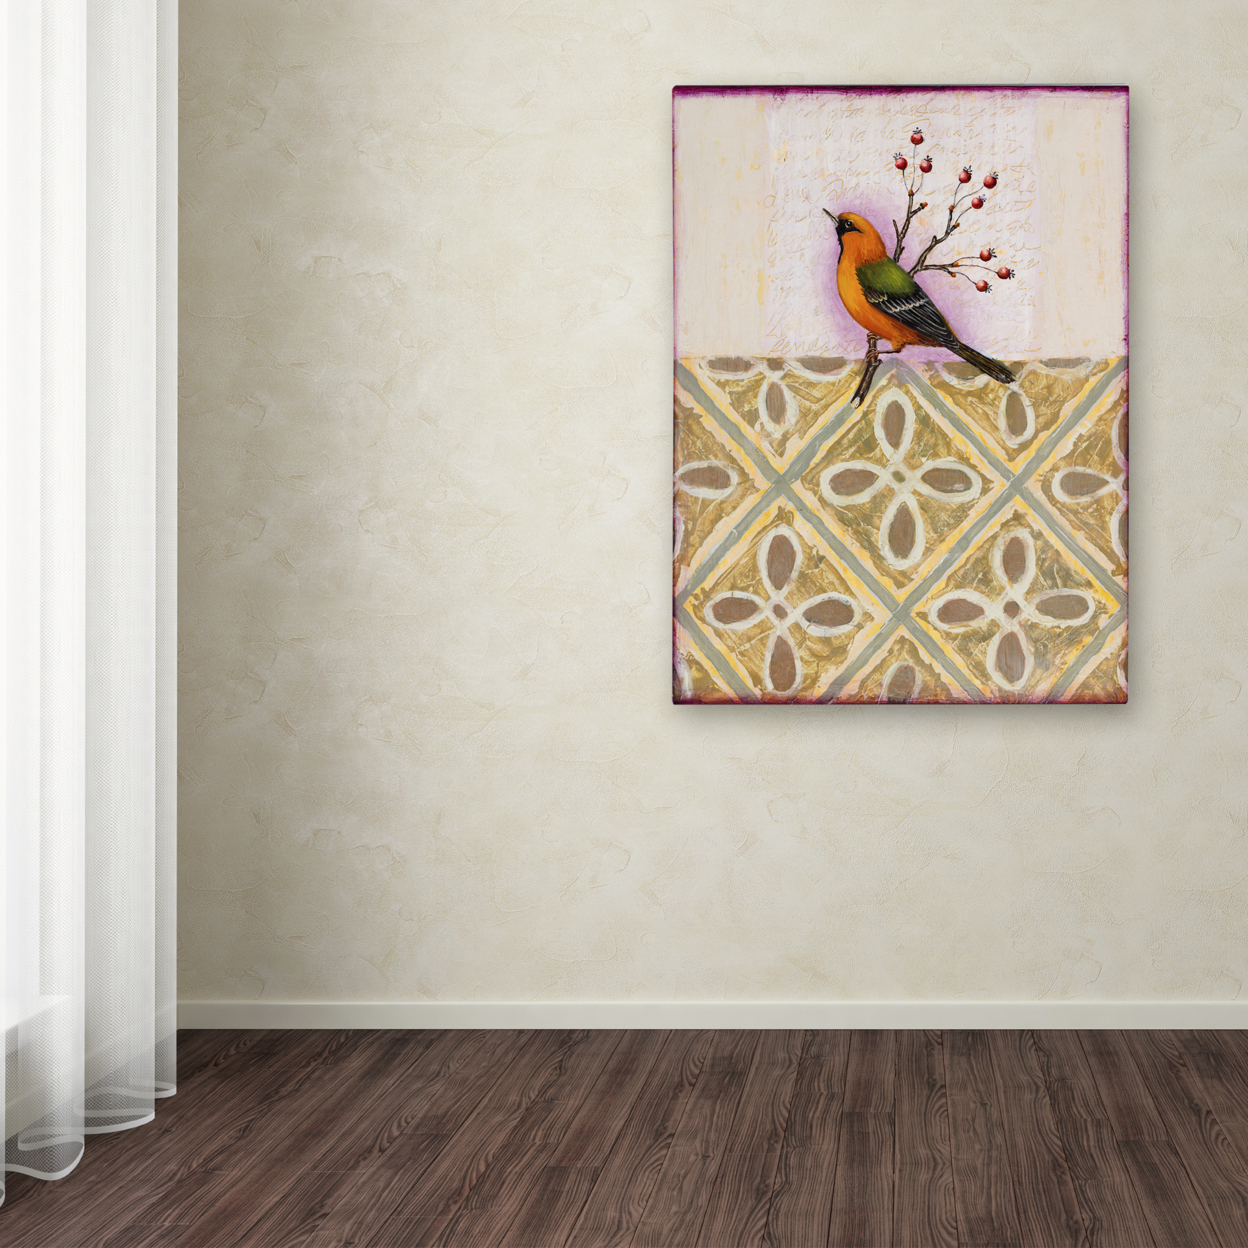 Rachel Paxton 'Cobbs Point Bird' Canvas Wall Art 35 X 47 Inches